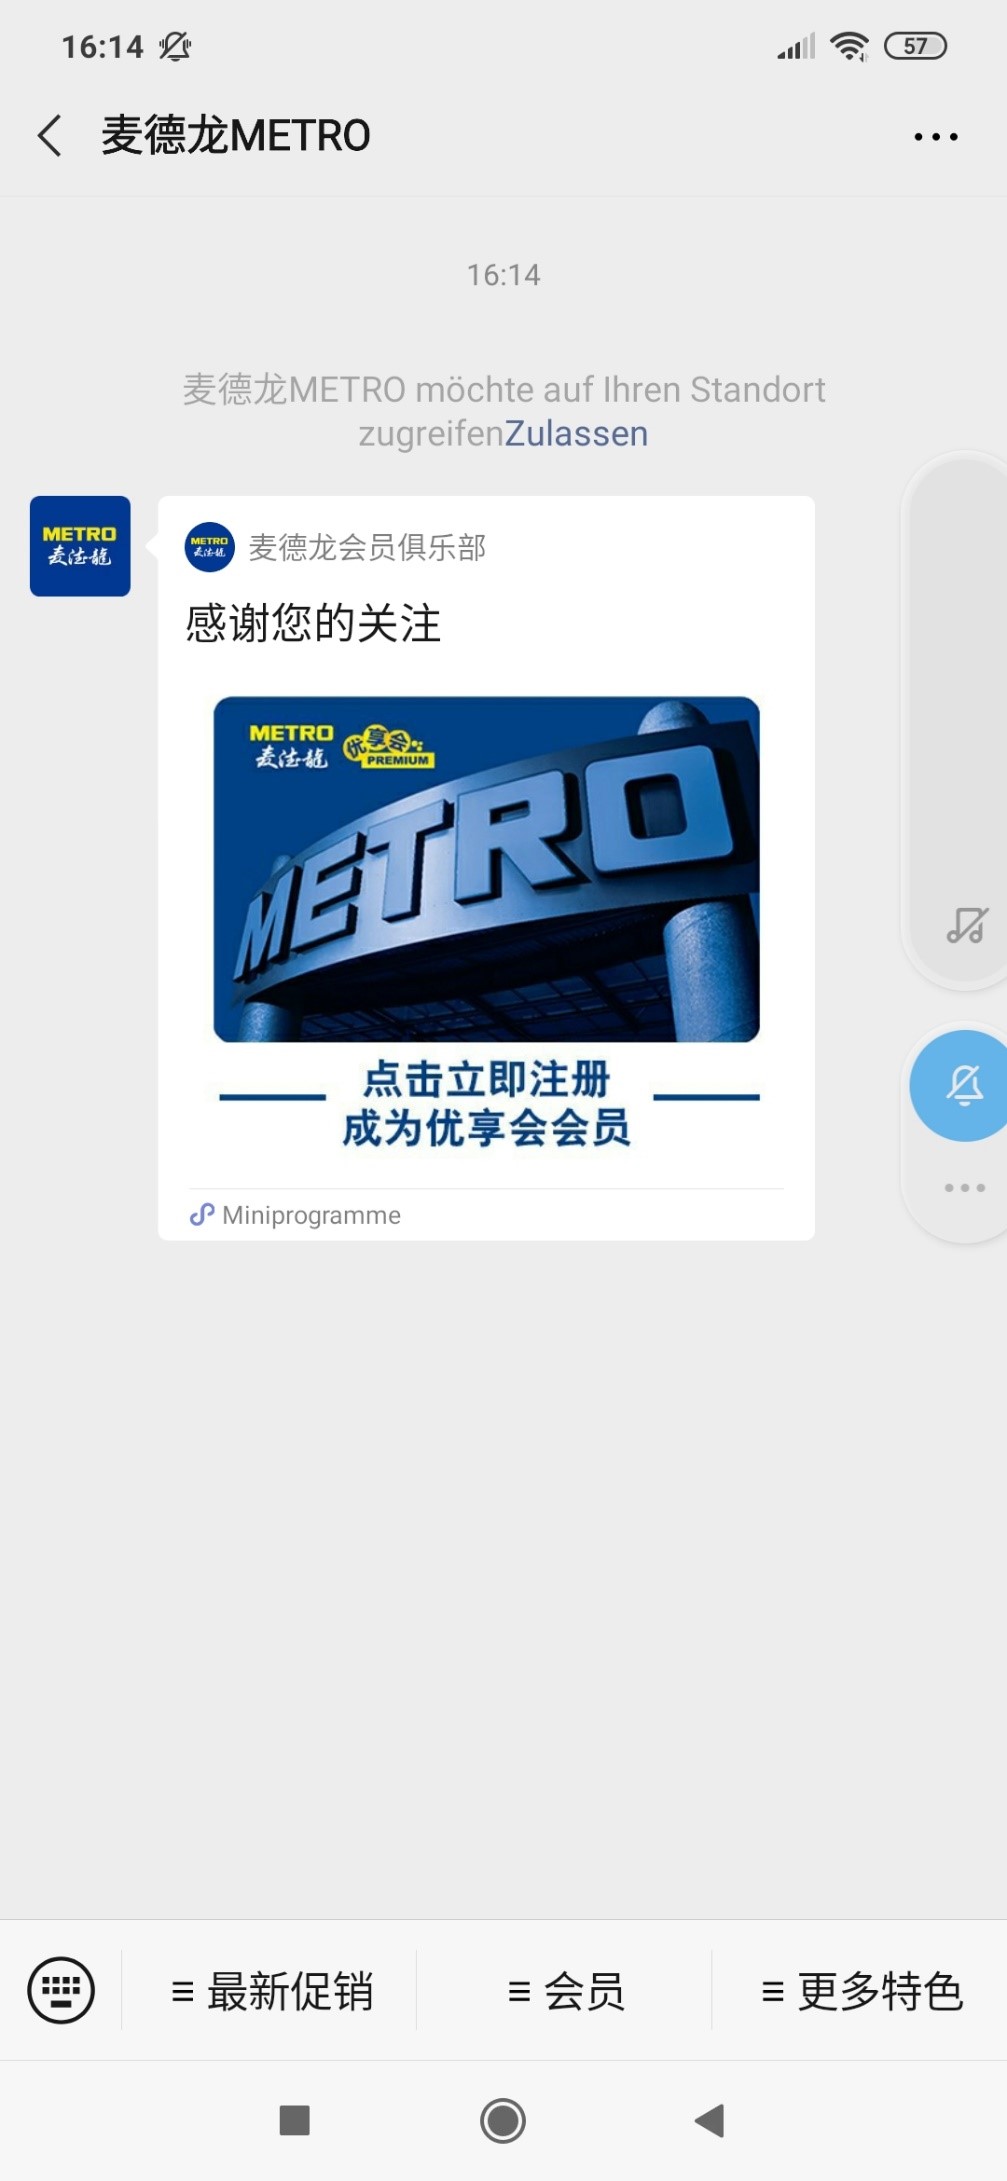 Metro China WeChat Account